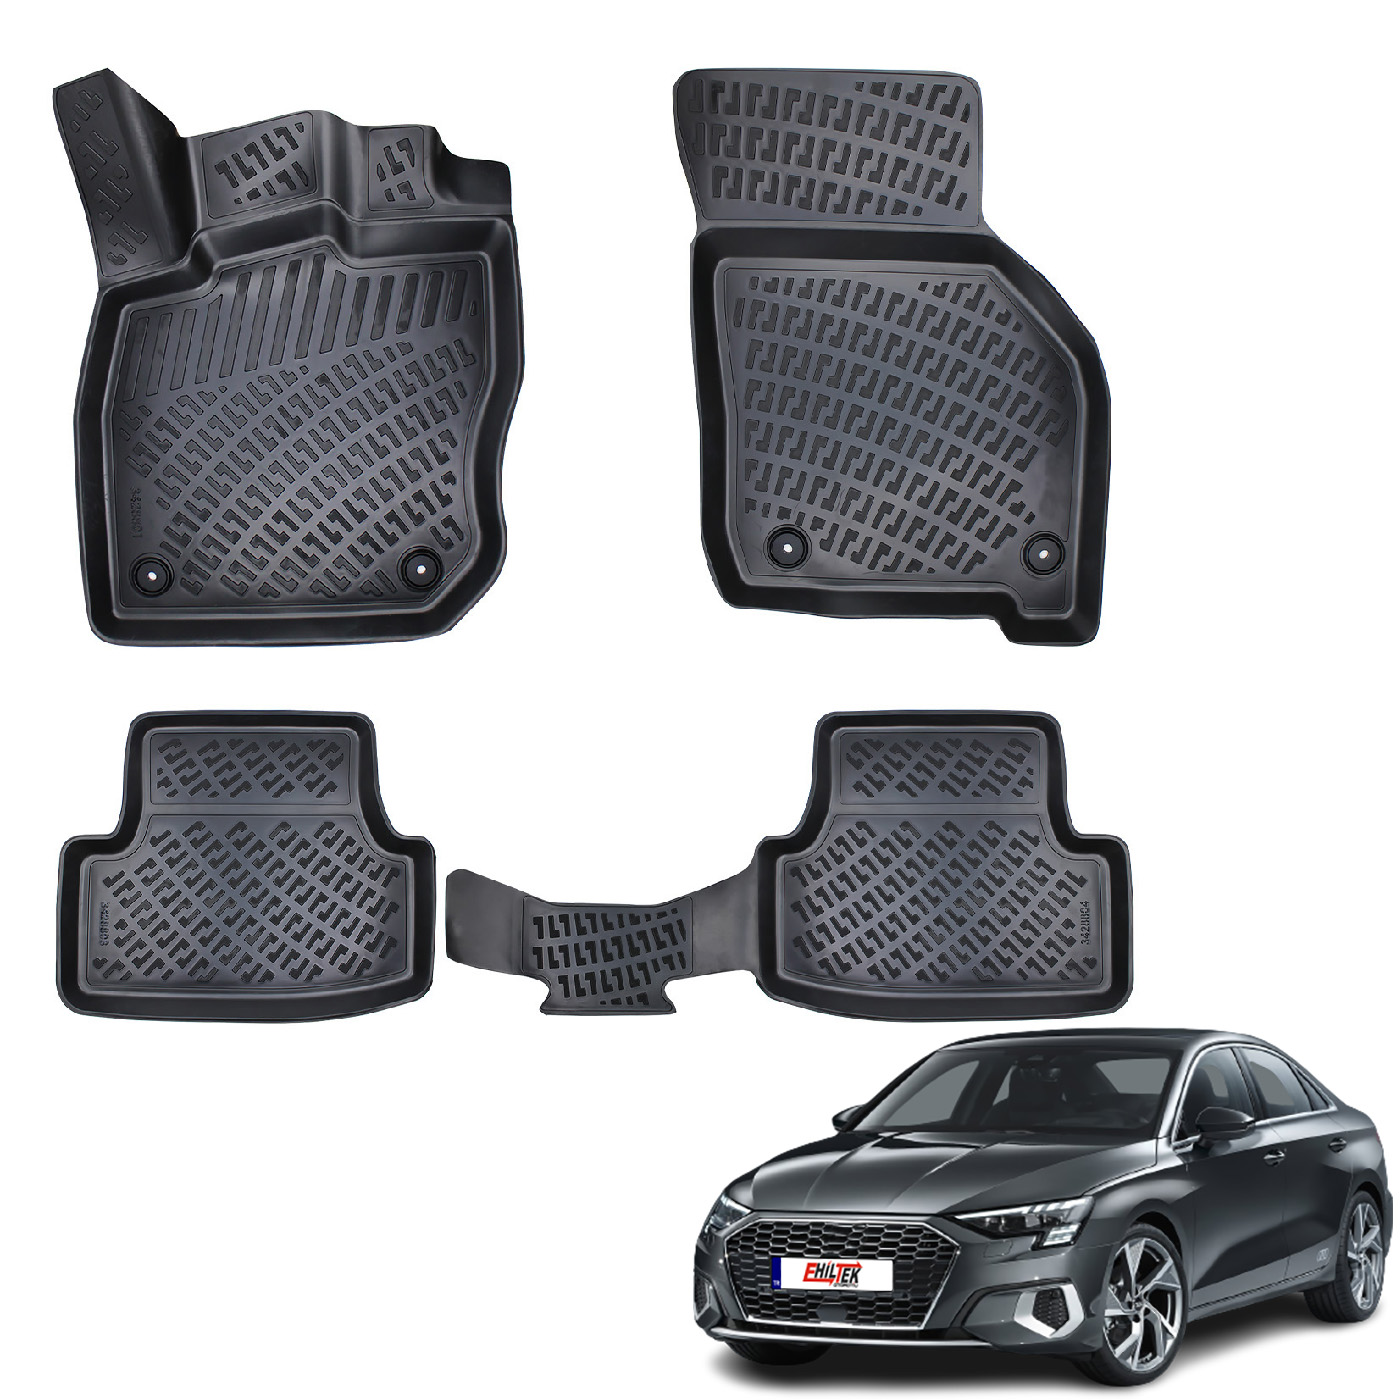 Audi A3 (2020+) Kauçuk Paspas - (Siyah)